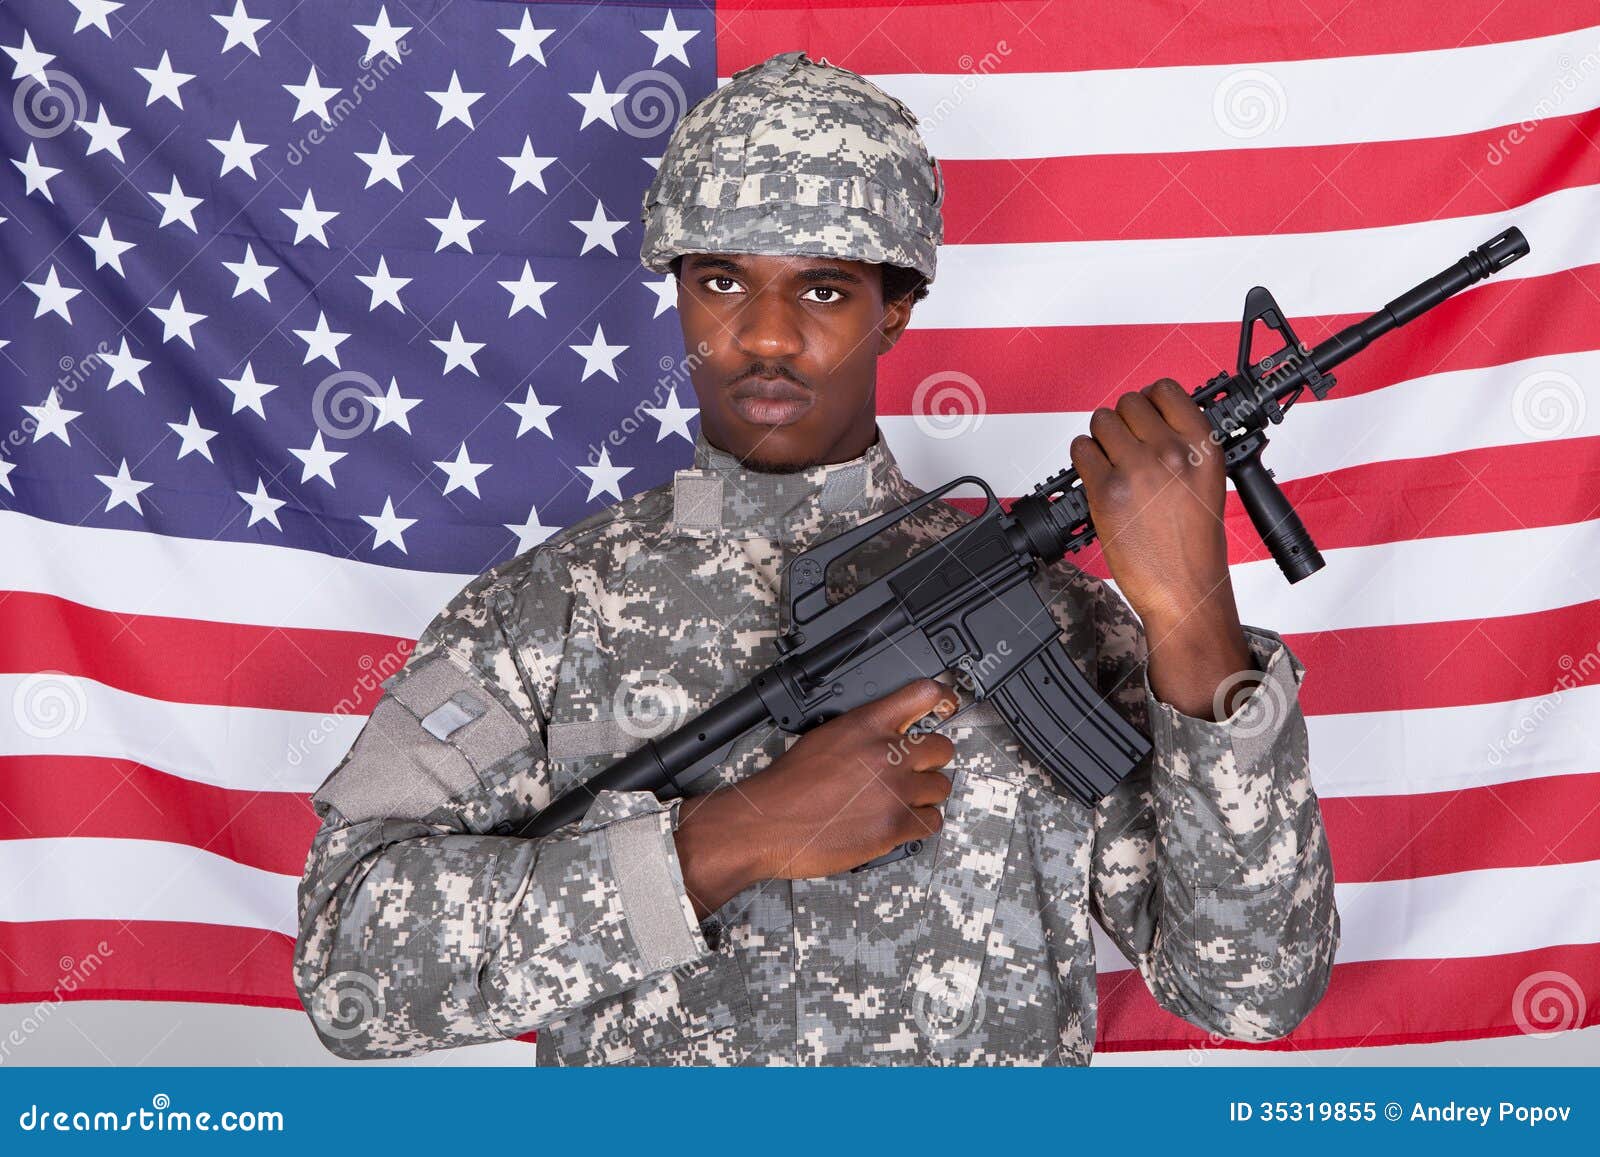 Чернокожий военный врач. Американский солдат. Американские солдаты негры. Негр в американской армии. Афроамериканец солдат.